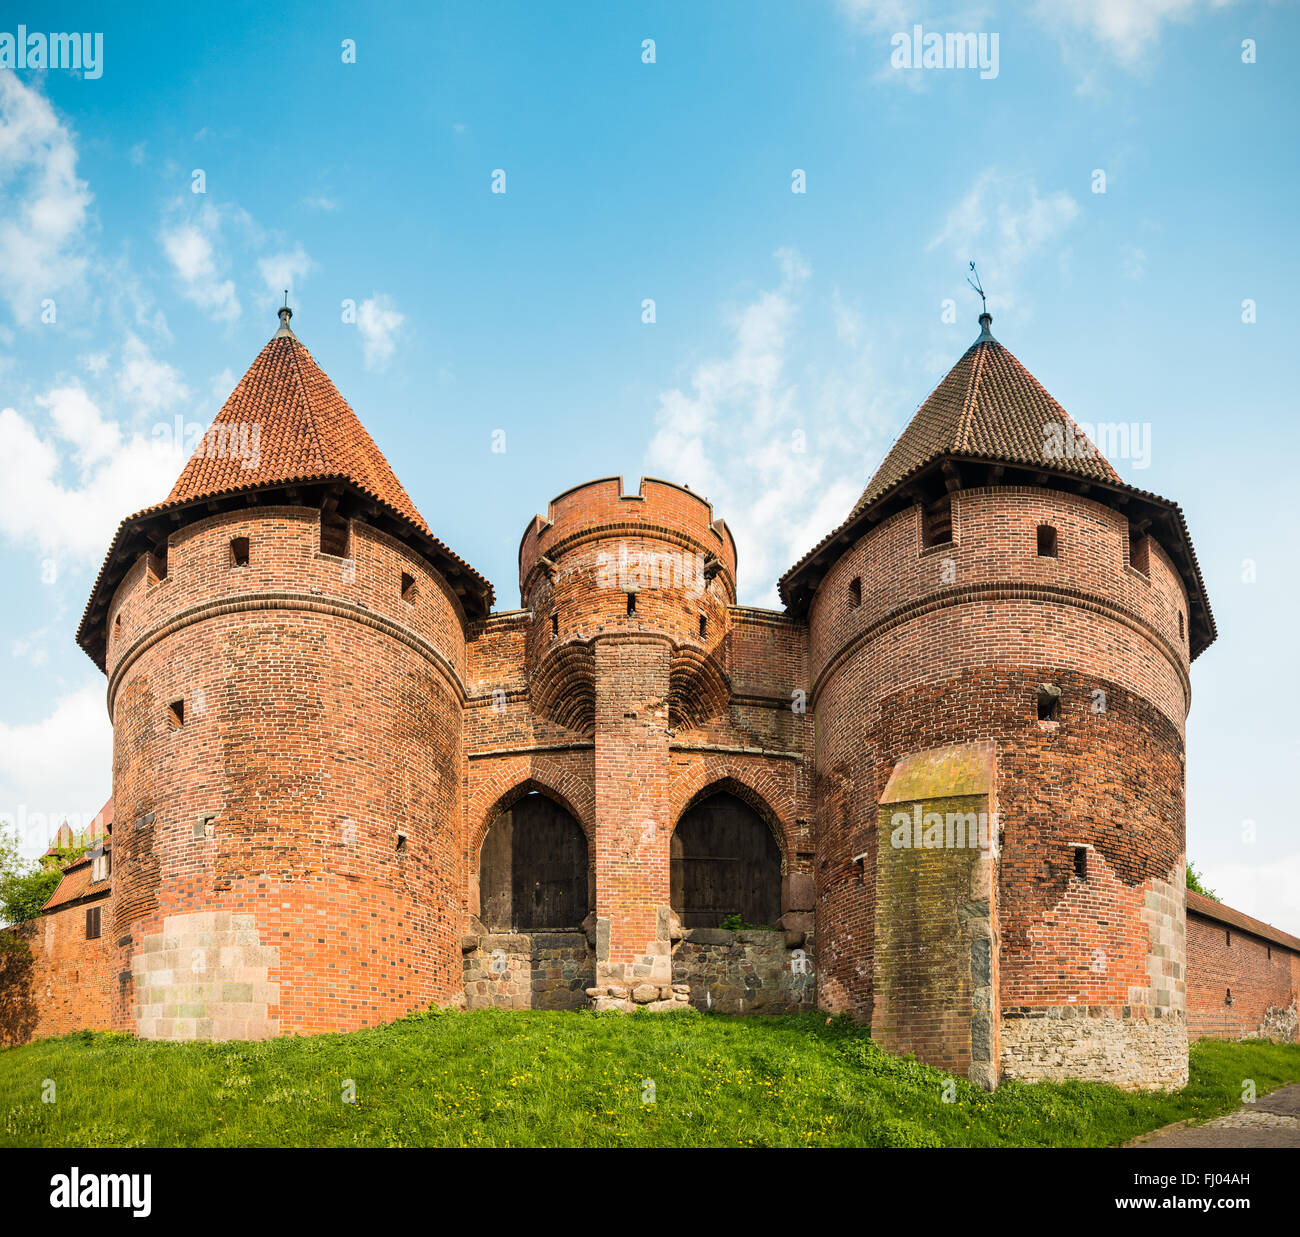 Castello teutonico in Malbork (Marienburg) in Pomerania, in Polonia, in Europa. UNESCO - Sito Patrimonio dell'umanità. Cielo blu con nuvole in backgr Foto Stock